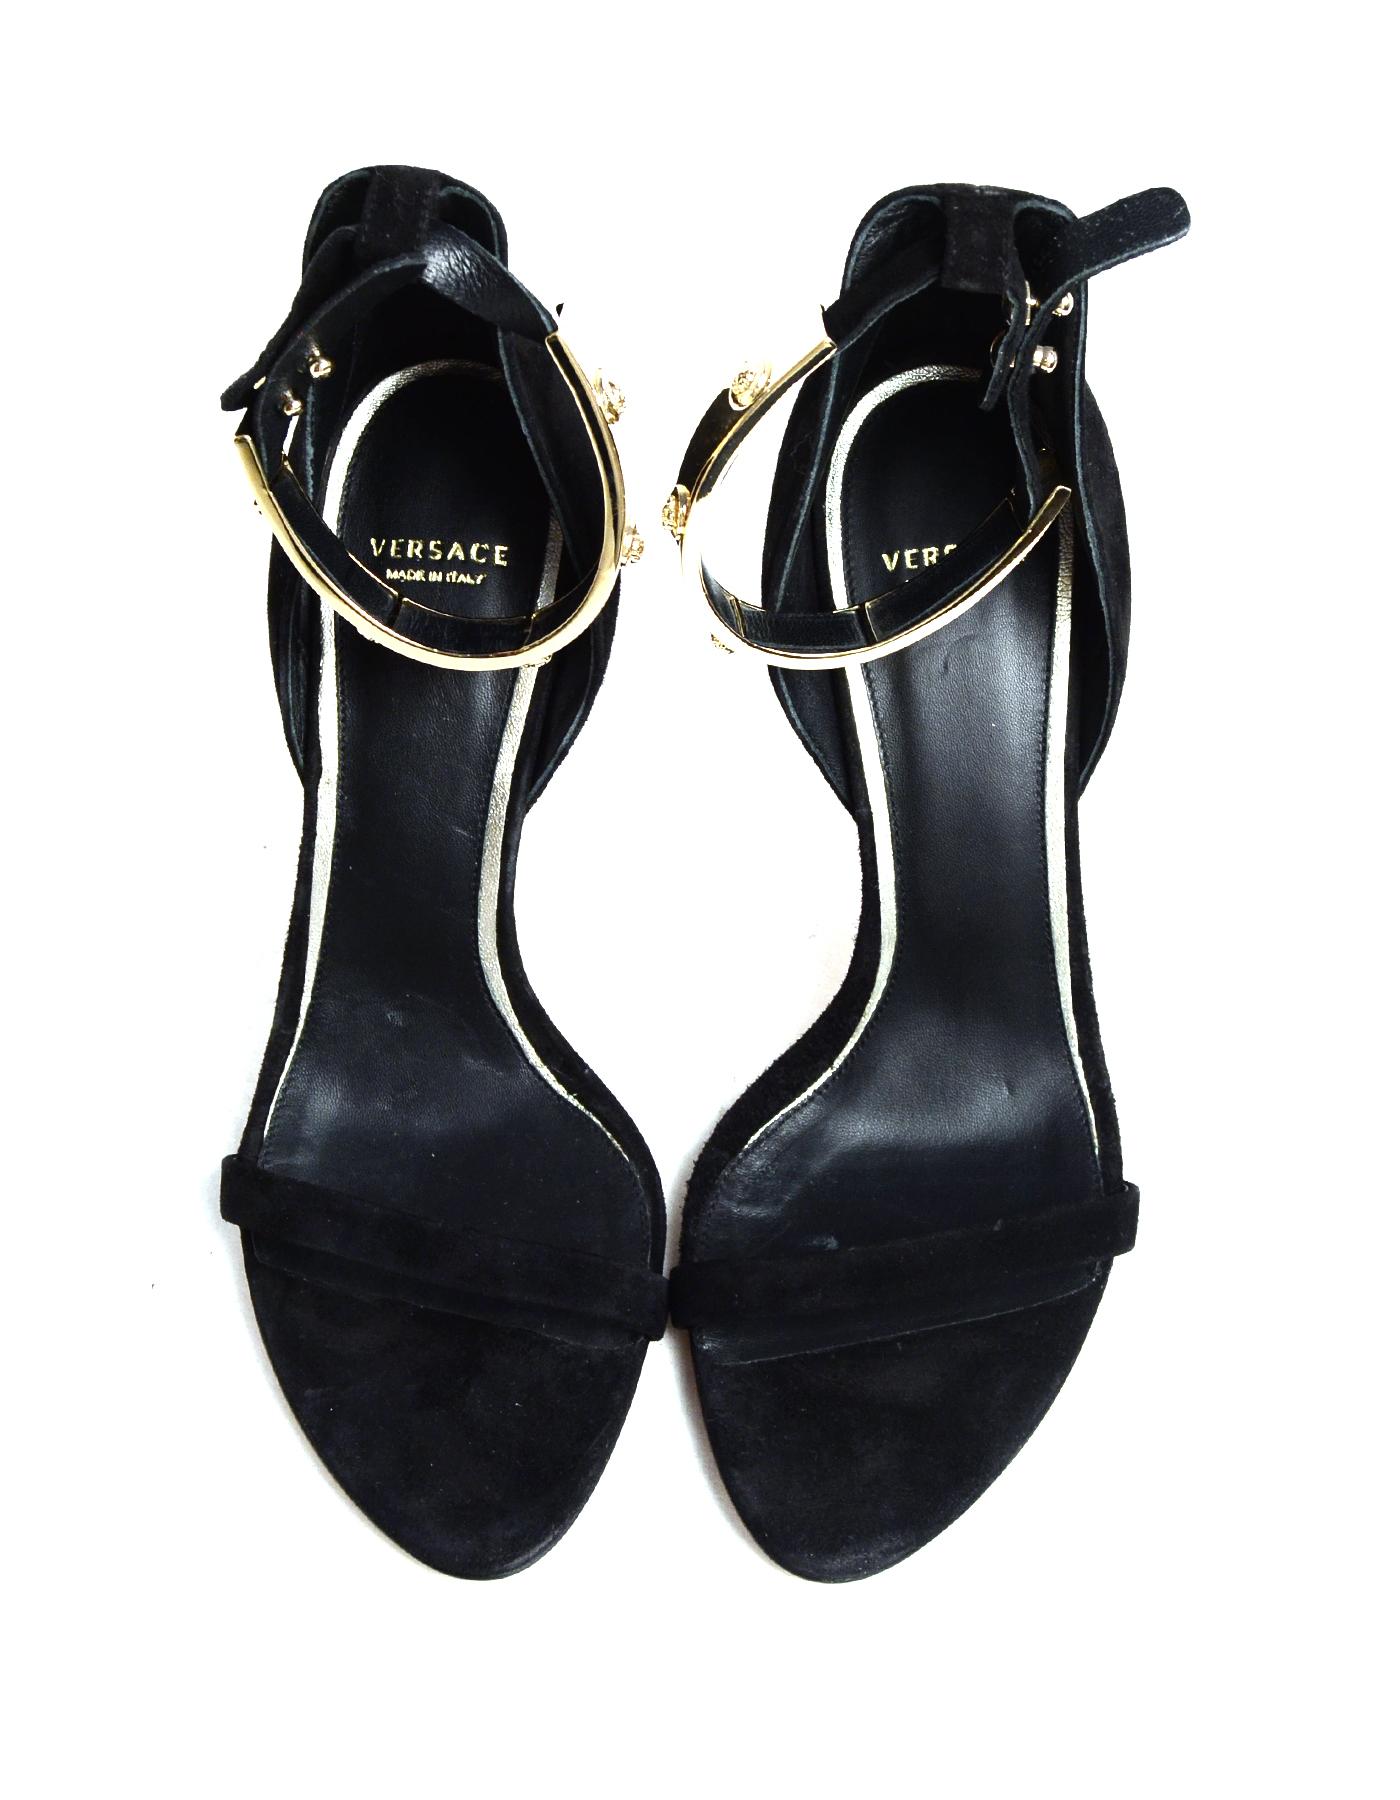 Women's Versace Black Suede Sandals W/ Goldtone Metal Medusa Ankle Strap Sz 39